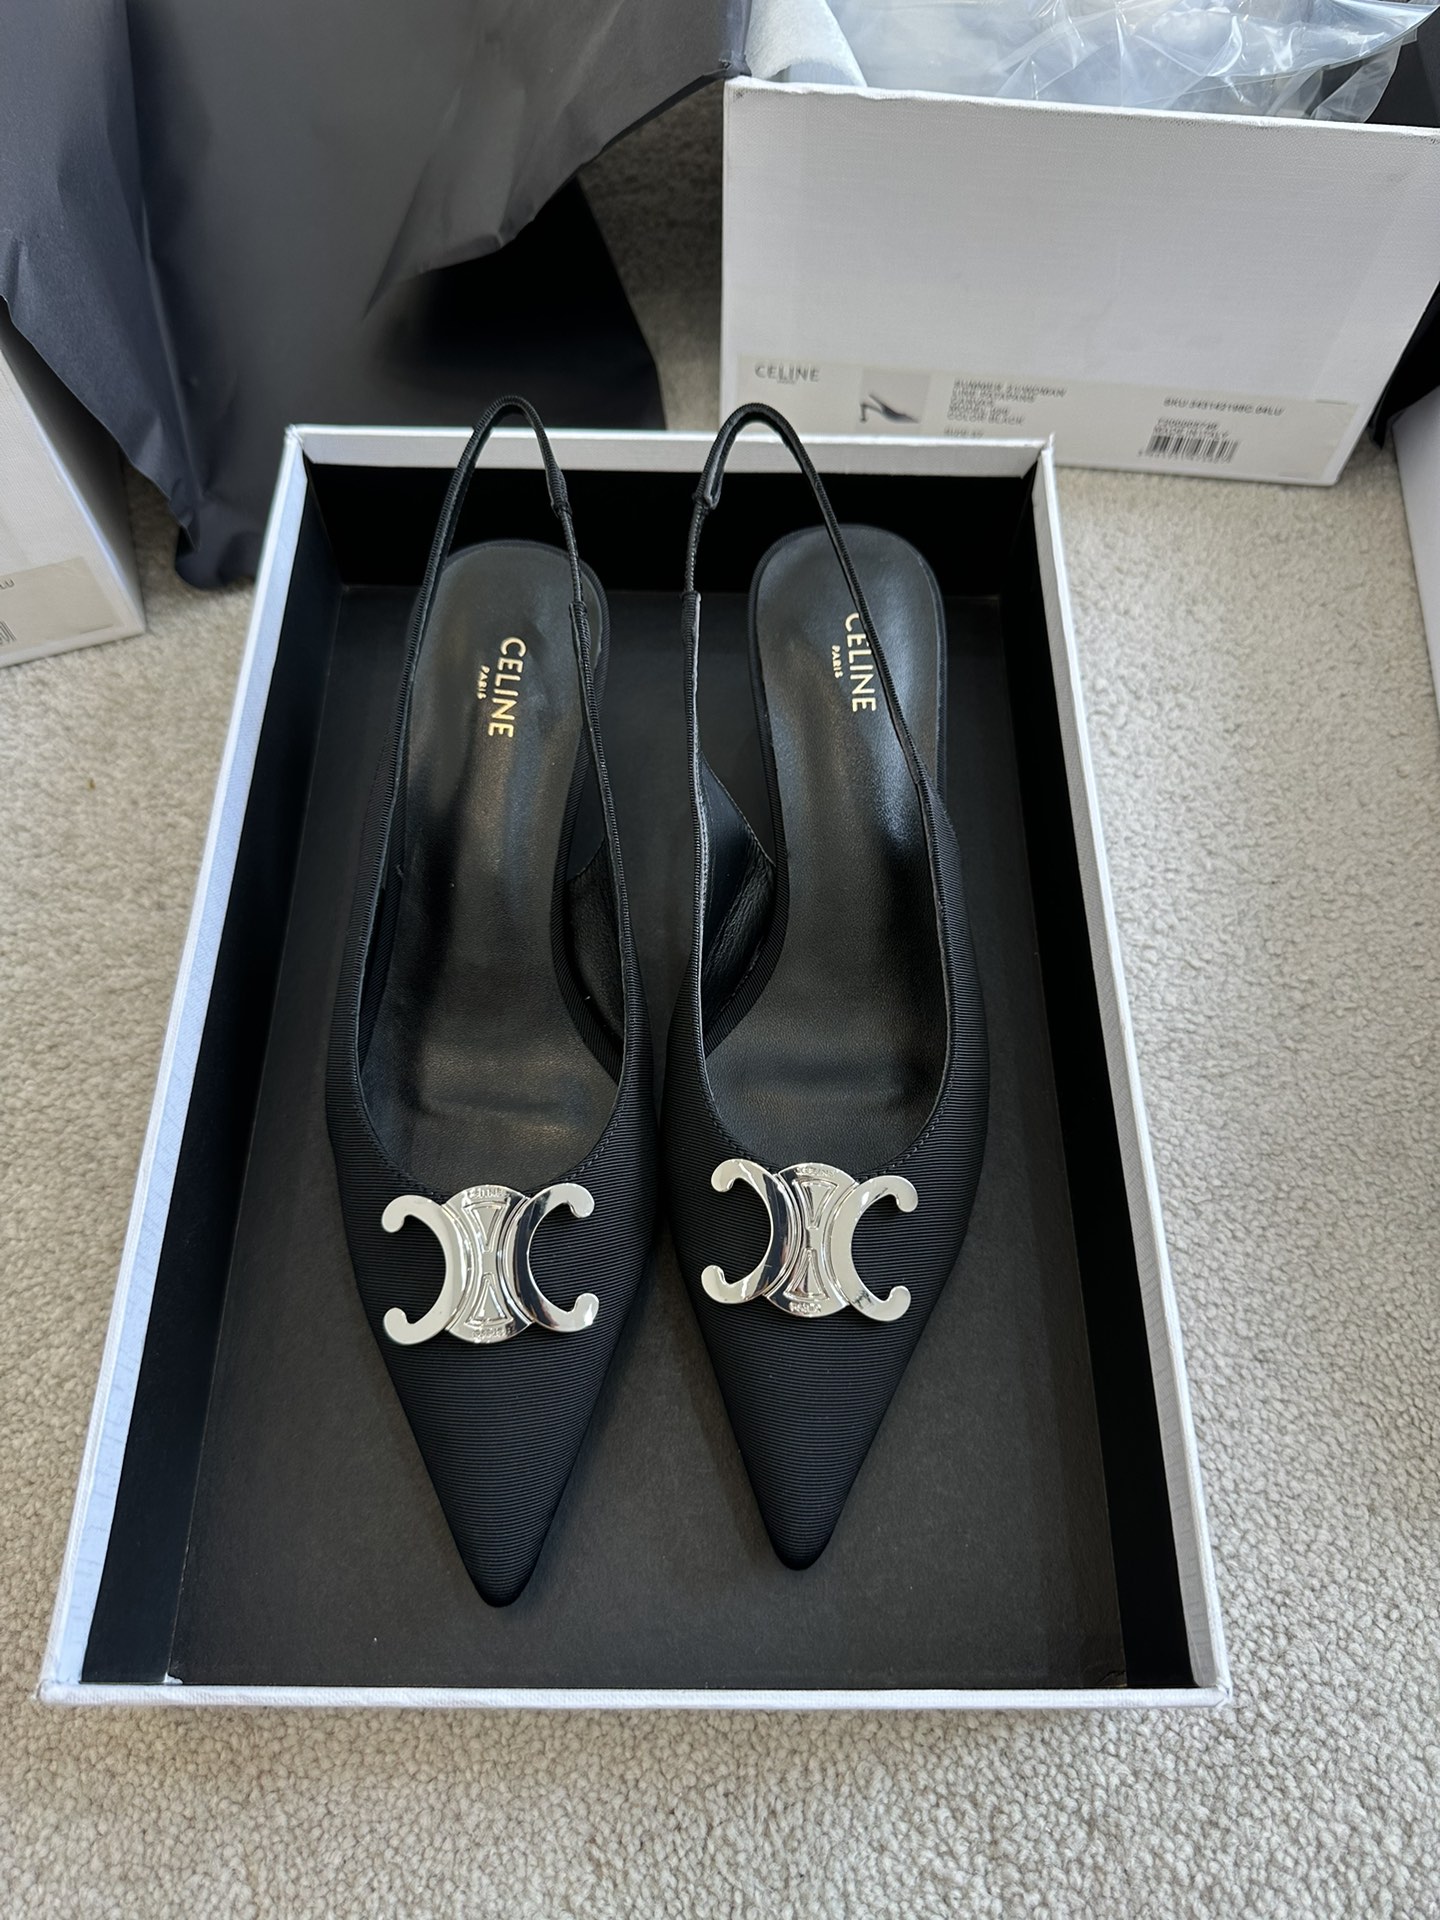 黑色布面；优雅与力量的完美结合；这款 Celine高跟鞋的设计简直美到爆炸，高雅的鞋跟和精美的鞋面简直让人一看就爱上。而且，它的颜色选择也超级美，无论你是喜欢经典的黑色，都有合适的选择。